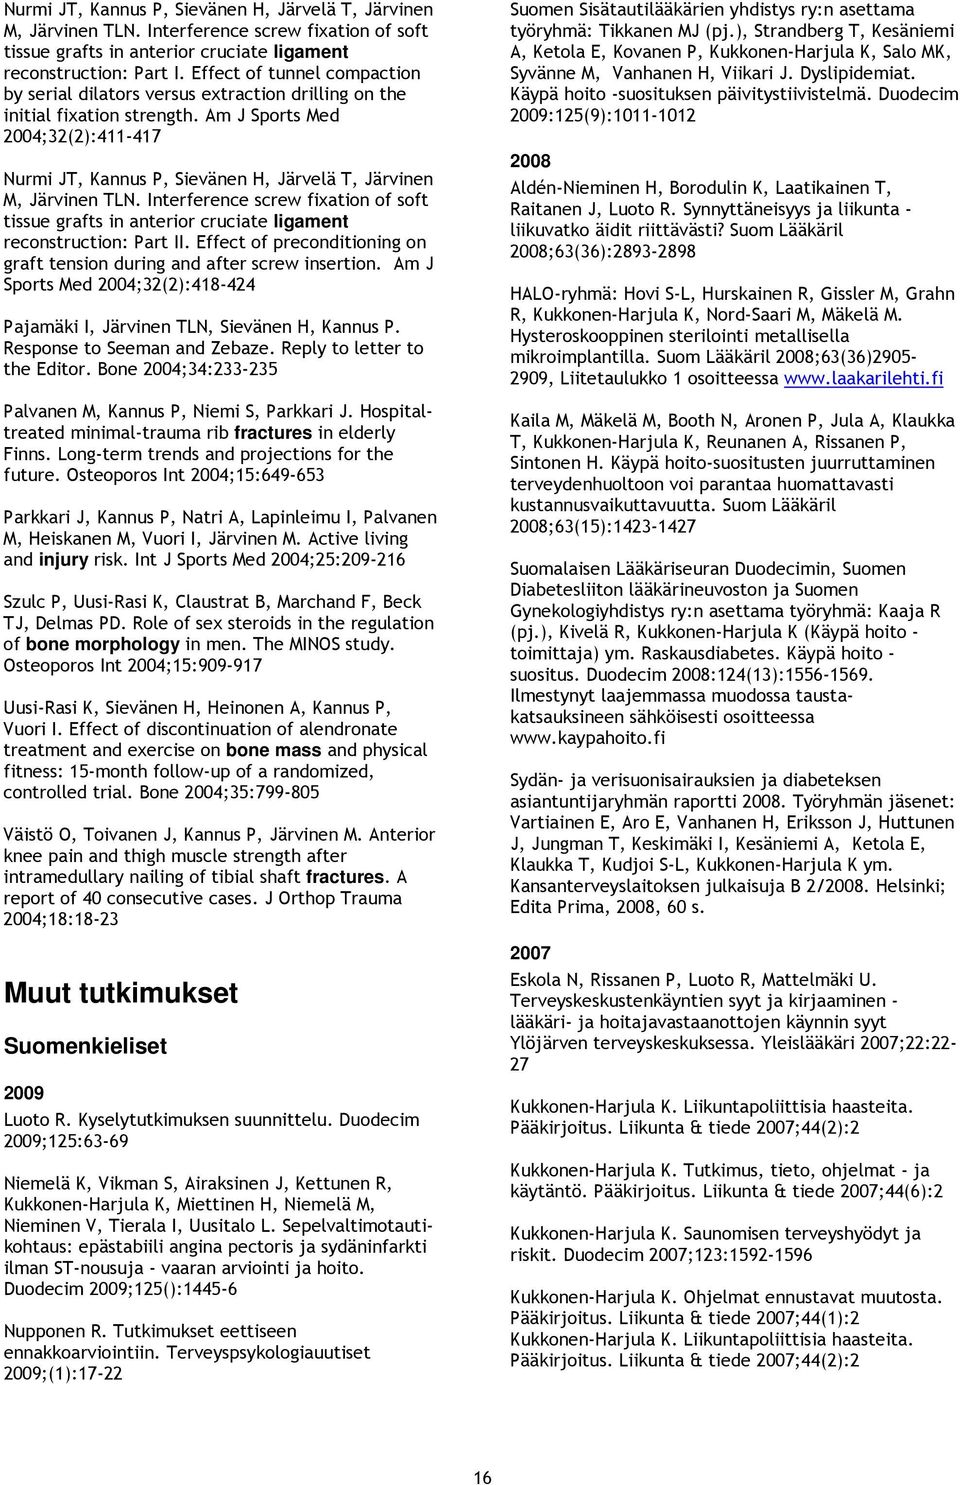 Am J Sports Med ;32(2):411-417 Nurmi JT, Kannus P, Sievänen H, Järvelä T, Järvinen M, Järvinen TLN.